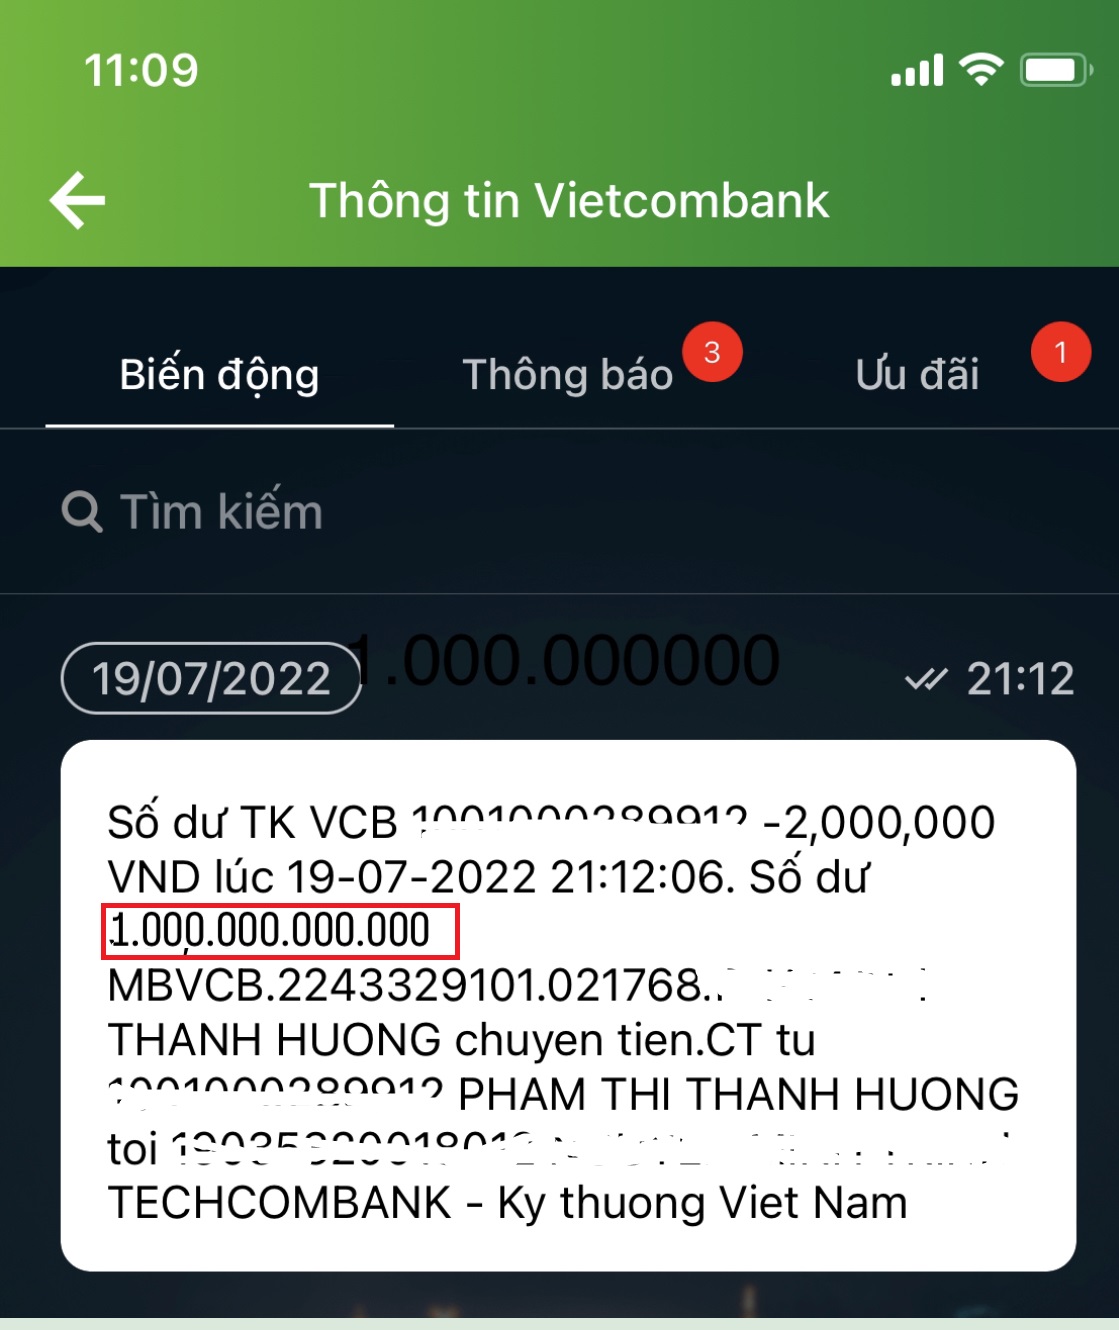 Hình ảnh số dư tài khoản Vietcombank KHỦNG